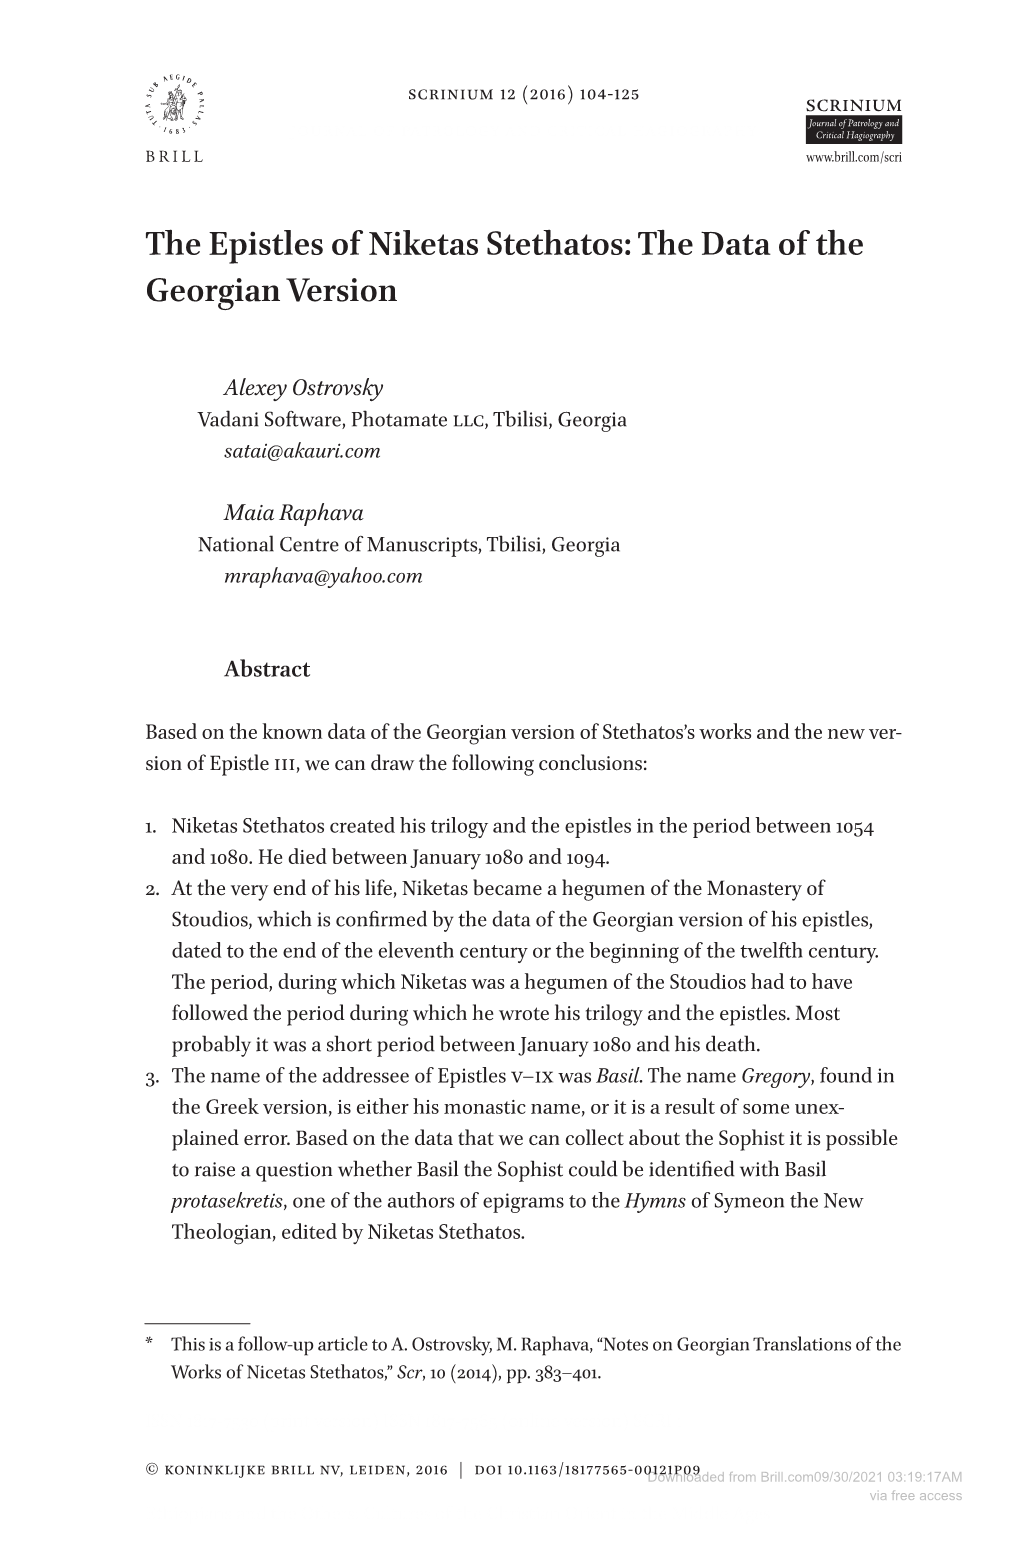 The Epistles of Niketas Stethatos: the Data of the Georgian Version